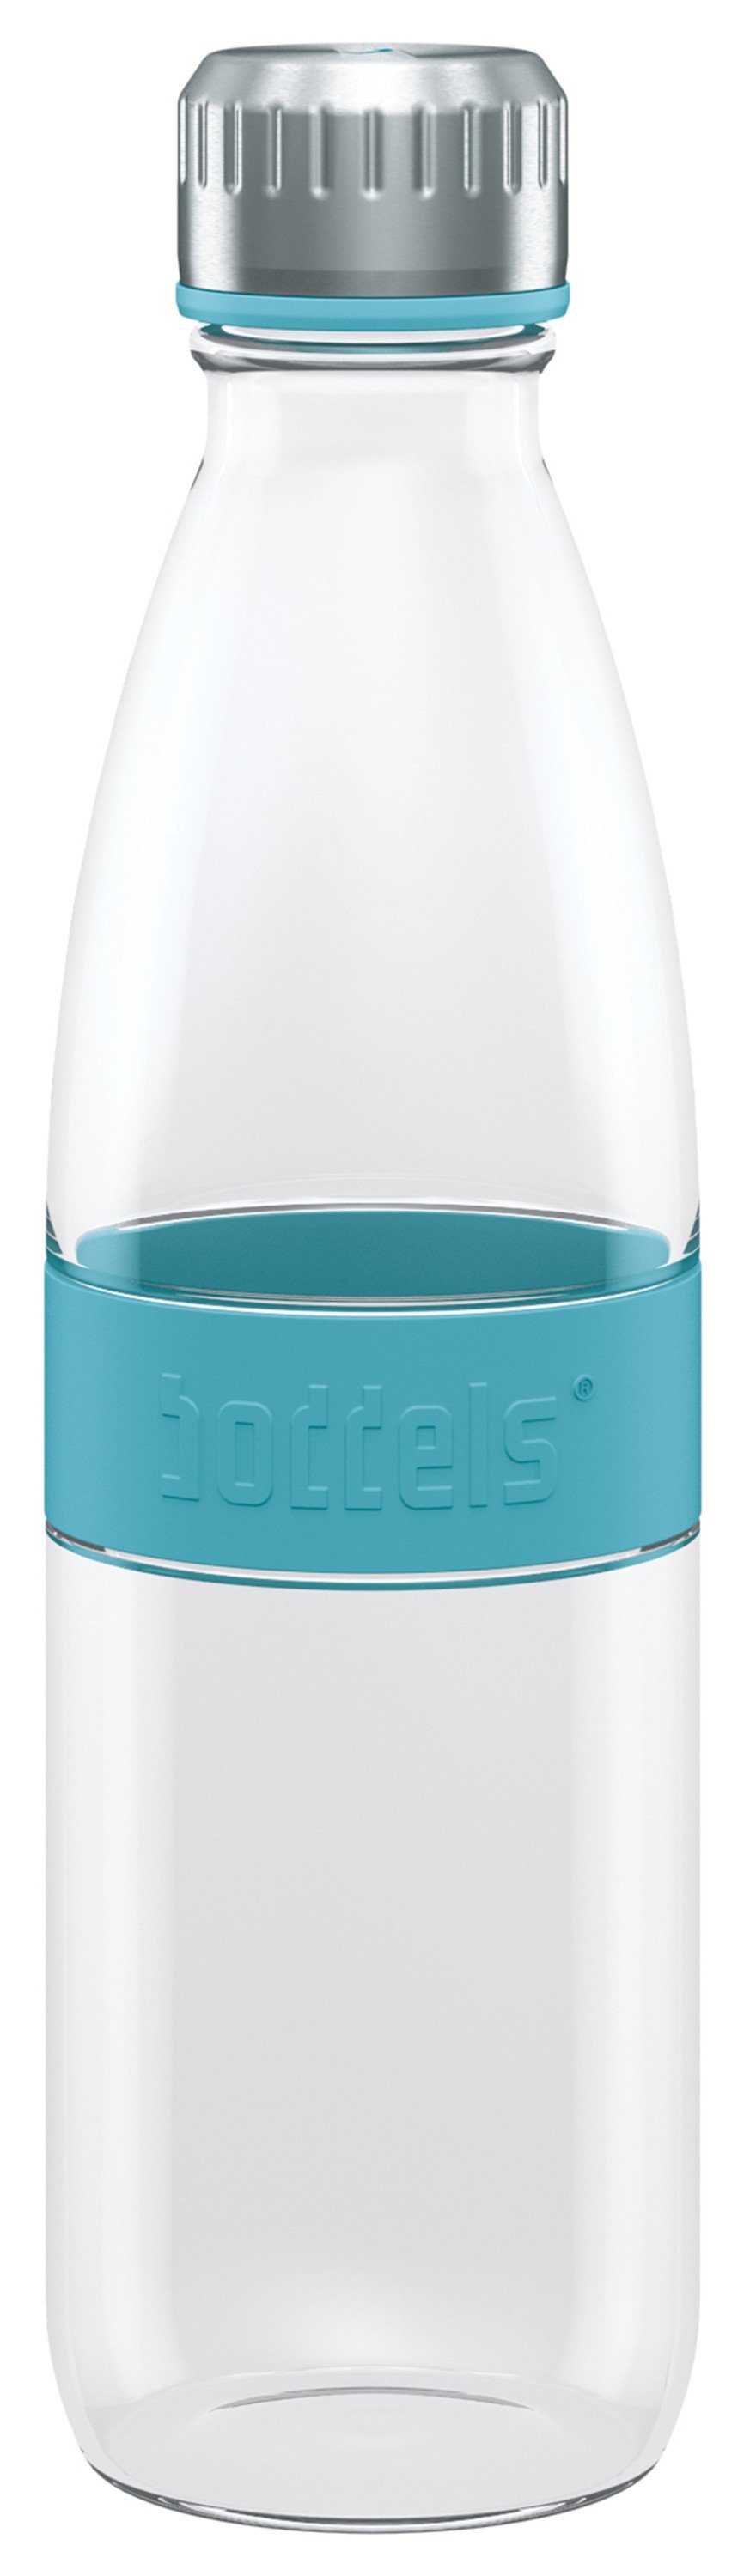 bruchfest Glas 650ml, doppelwandig, DREE Flasche Türkisblau boddels Trinkflasche auslaufsicher, aus